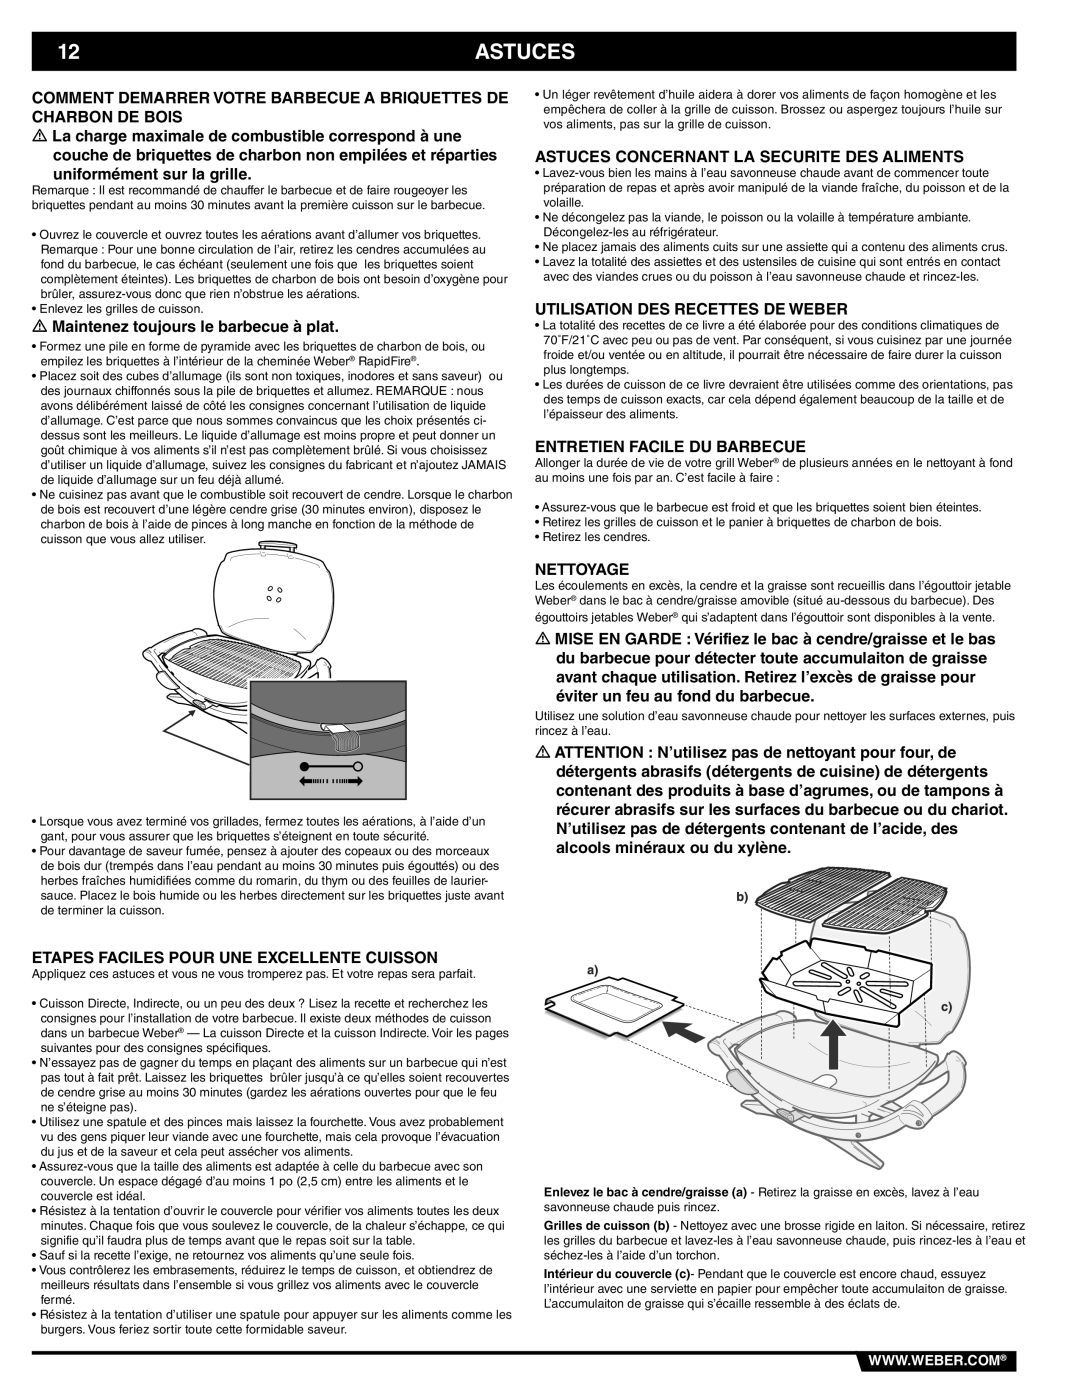 Weber Weber Charcoal Grill, 41093 manual Astuces, Comment Demarrer Votre Barbecue A Briquettes De Charbon De Bois, Nettoyage 